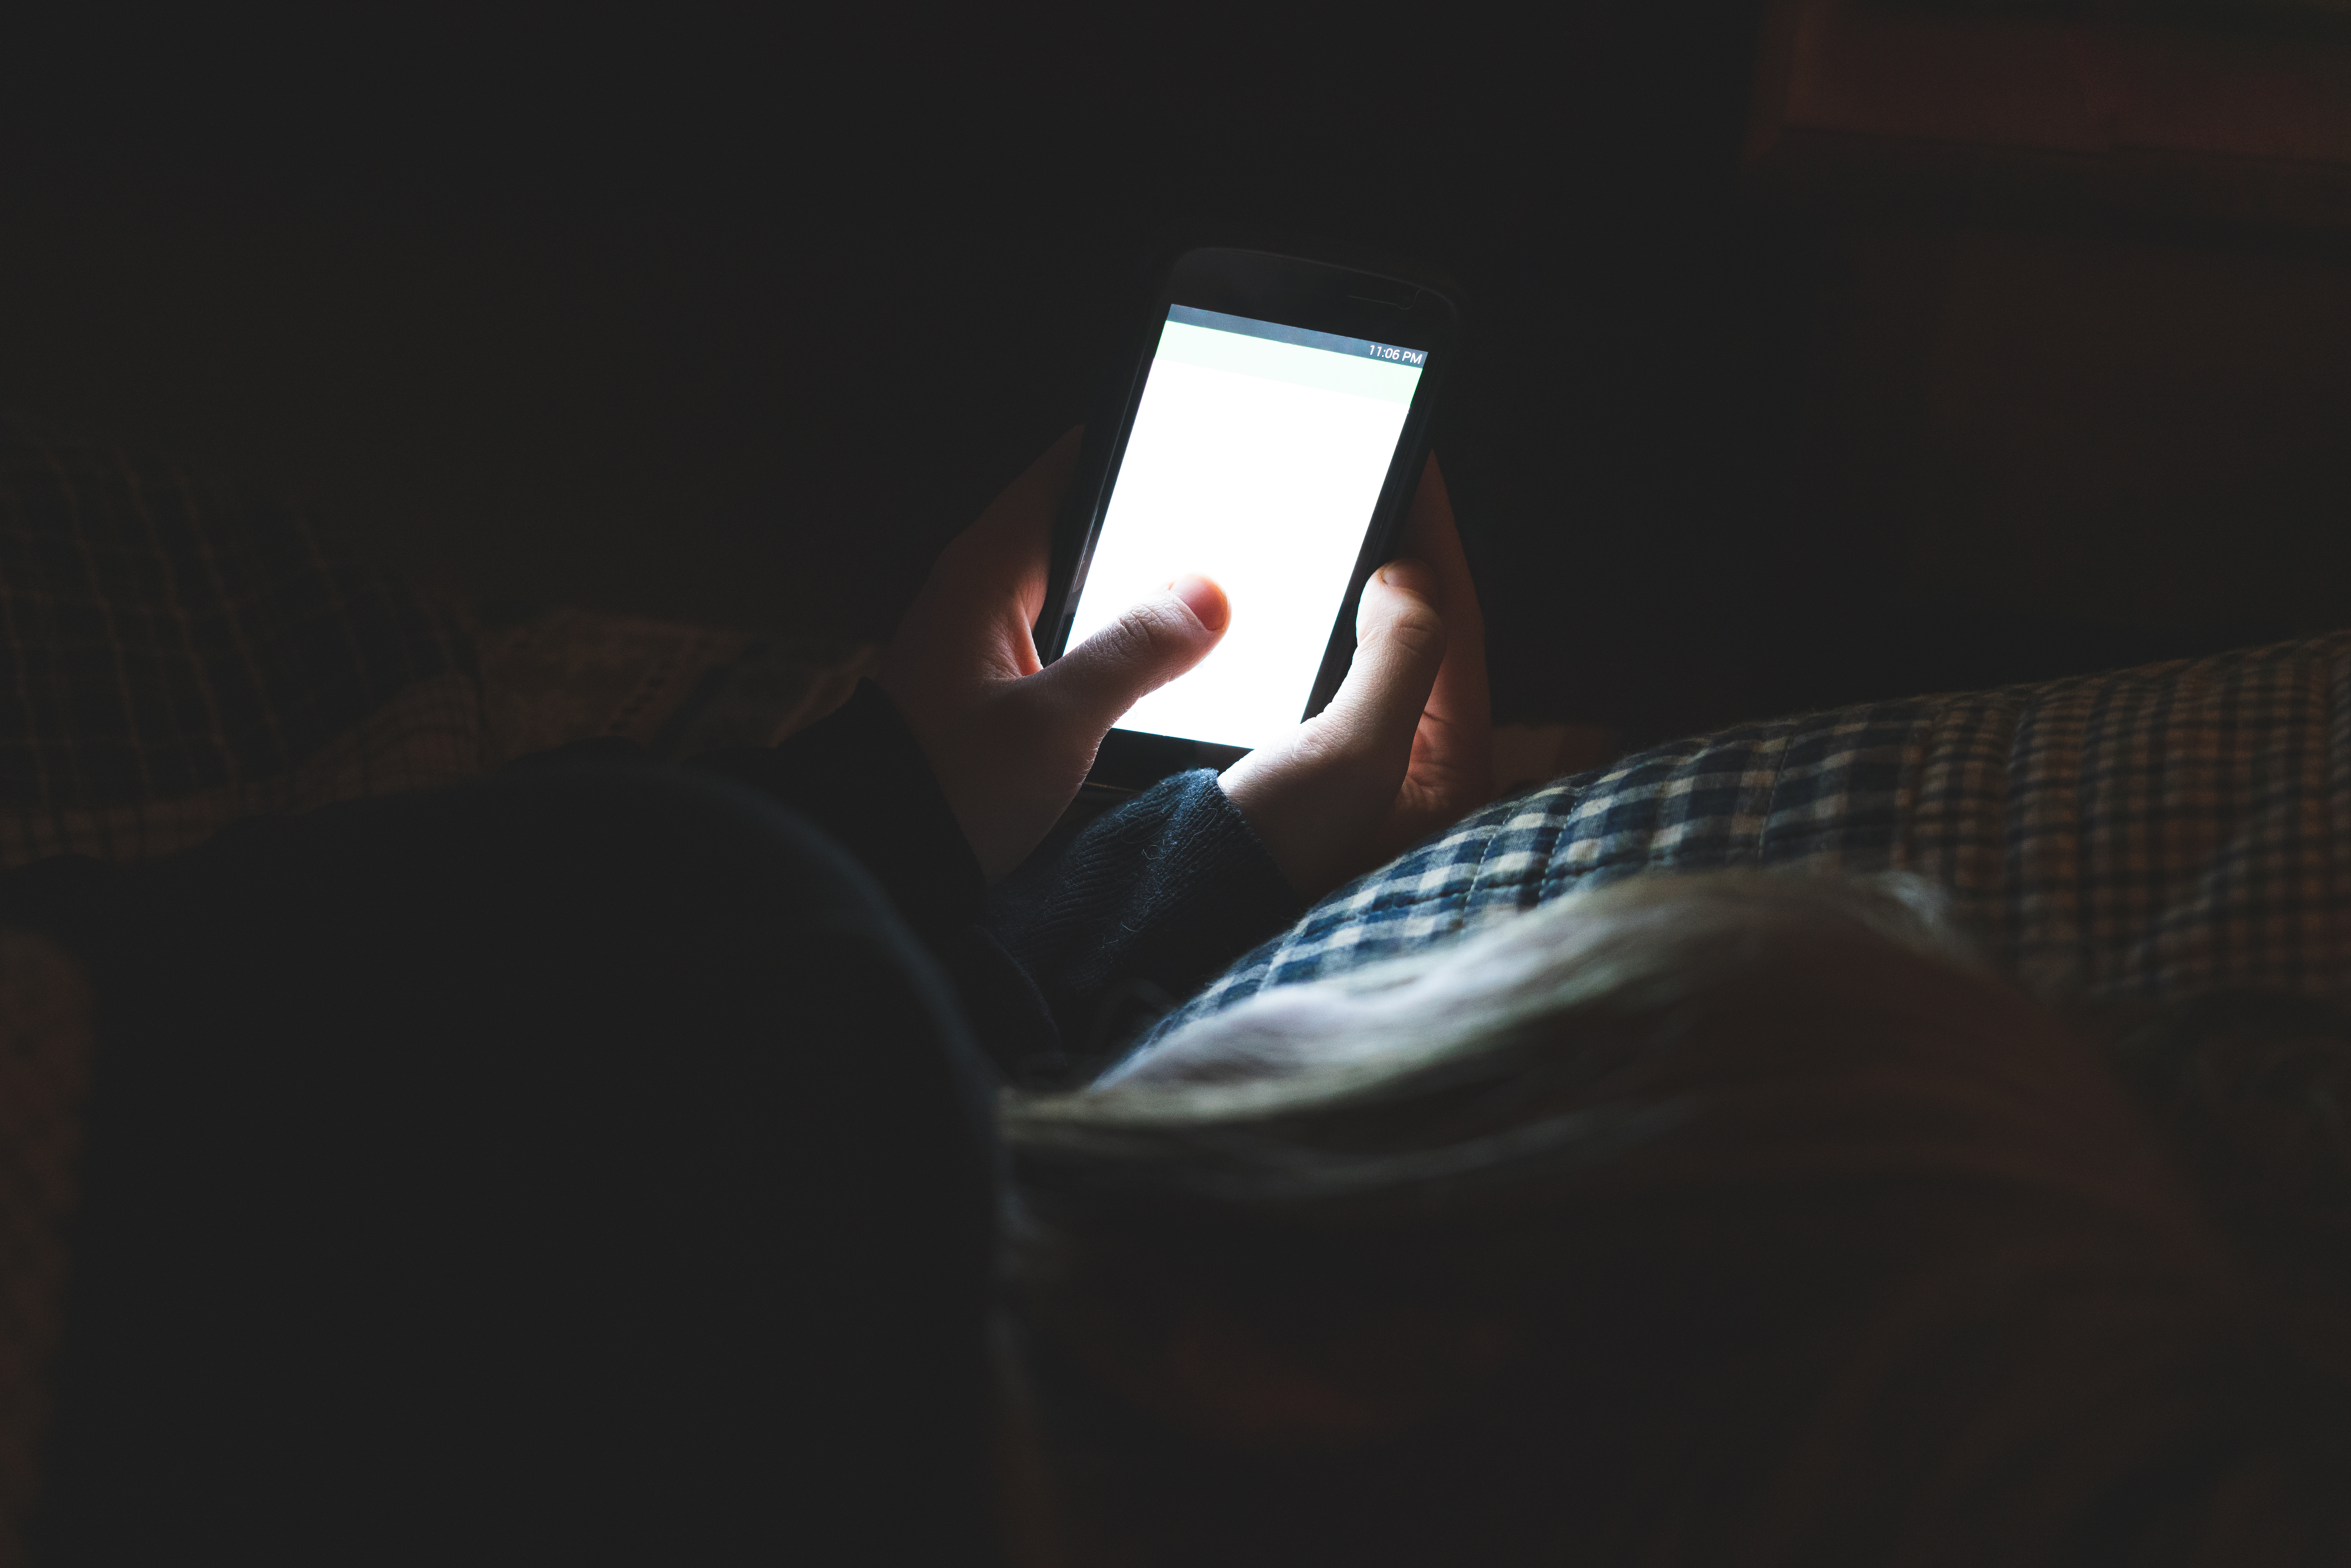 Une personne tenant un smartphone dans une pièce sombre | Source : Shutterstock